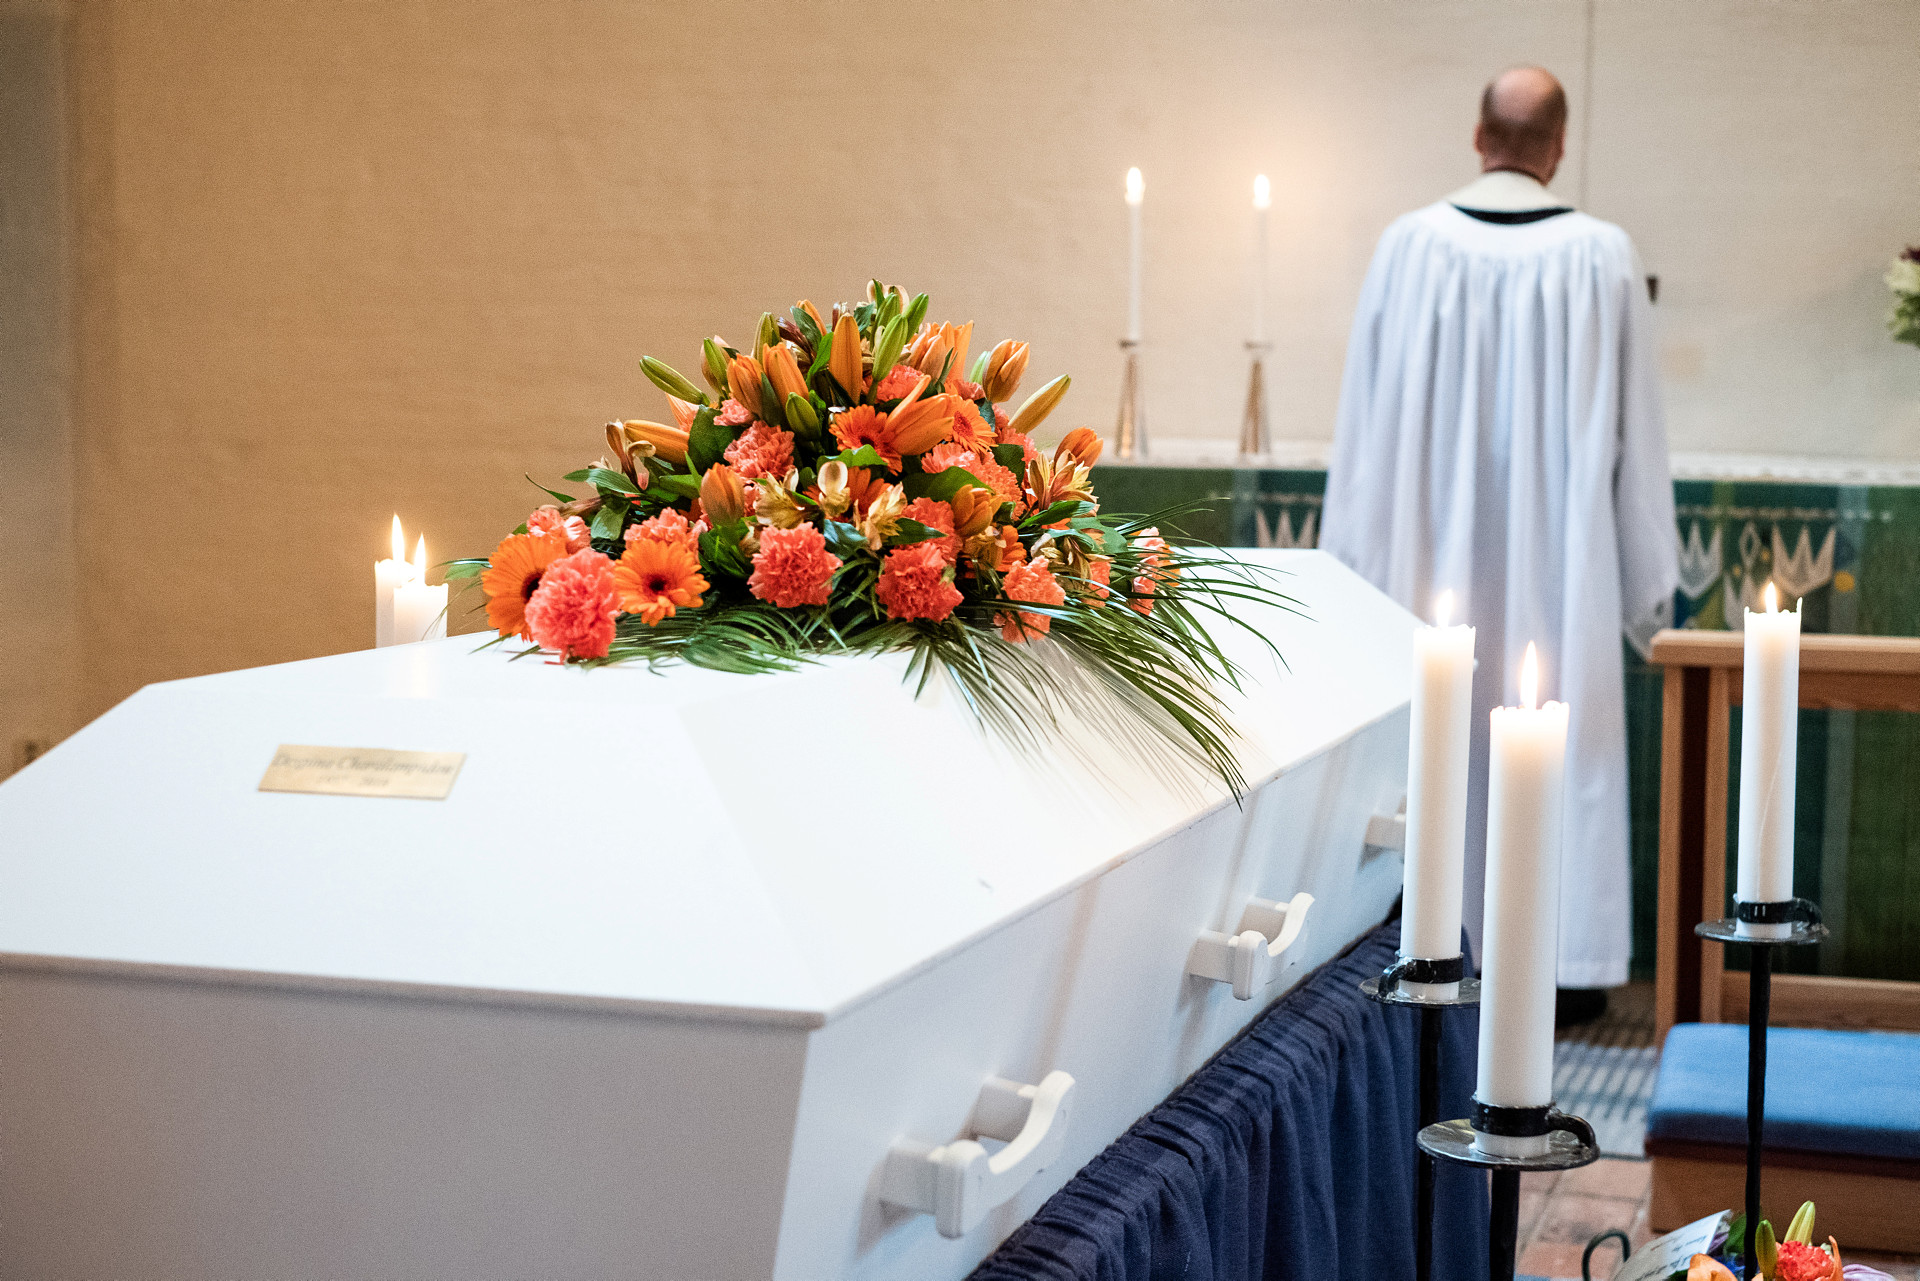 Vit kista med orange blomkrans på står bakom prästen vid altaret. Flera tända ljus.